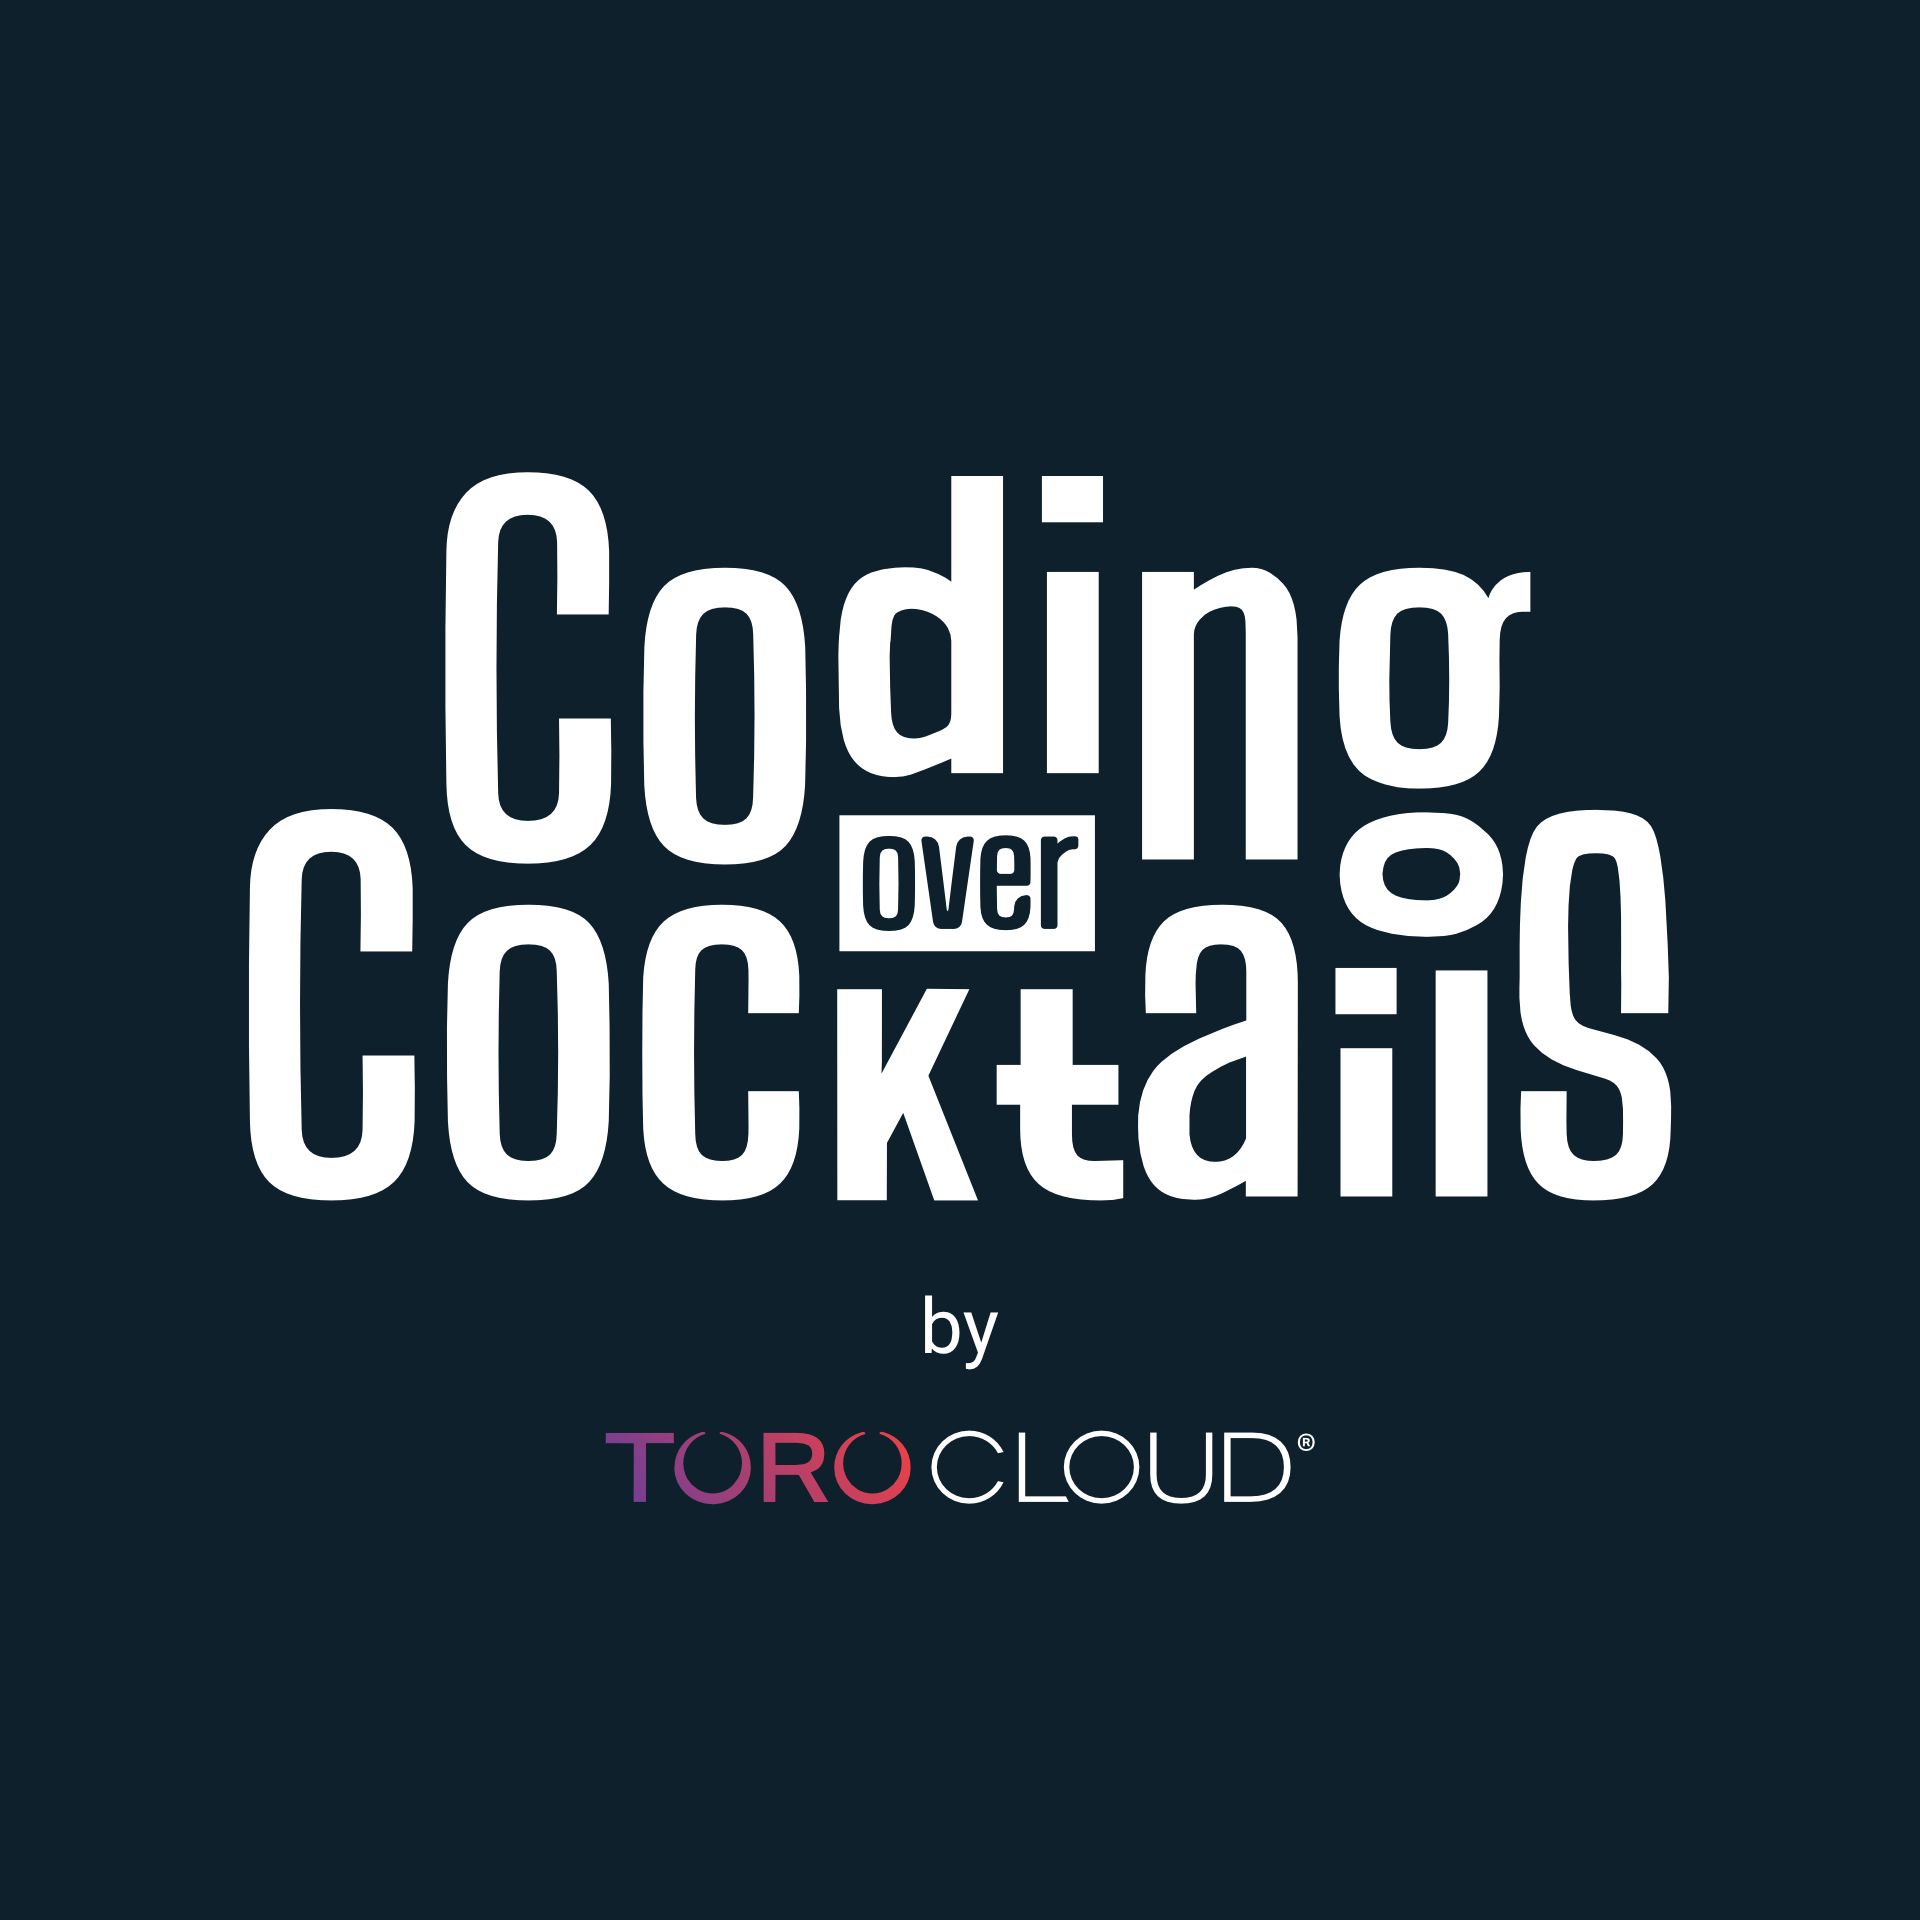 Over code